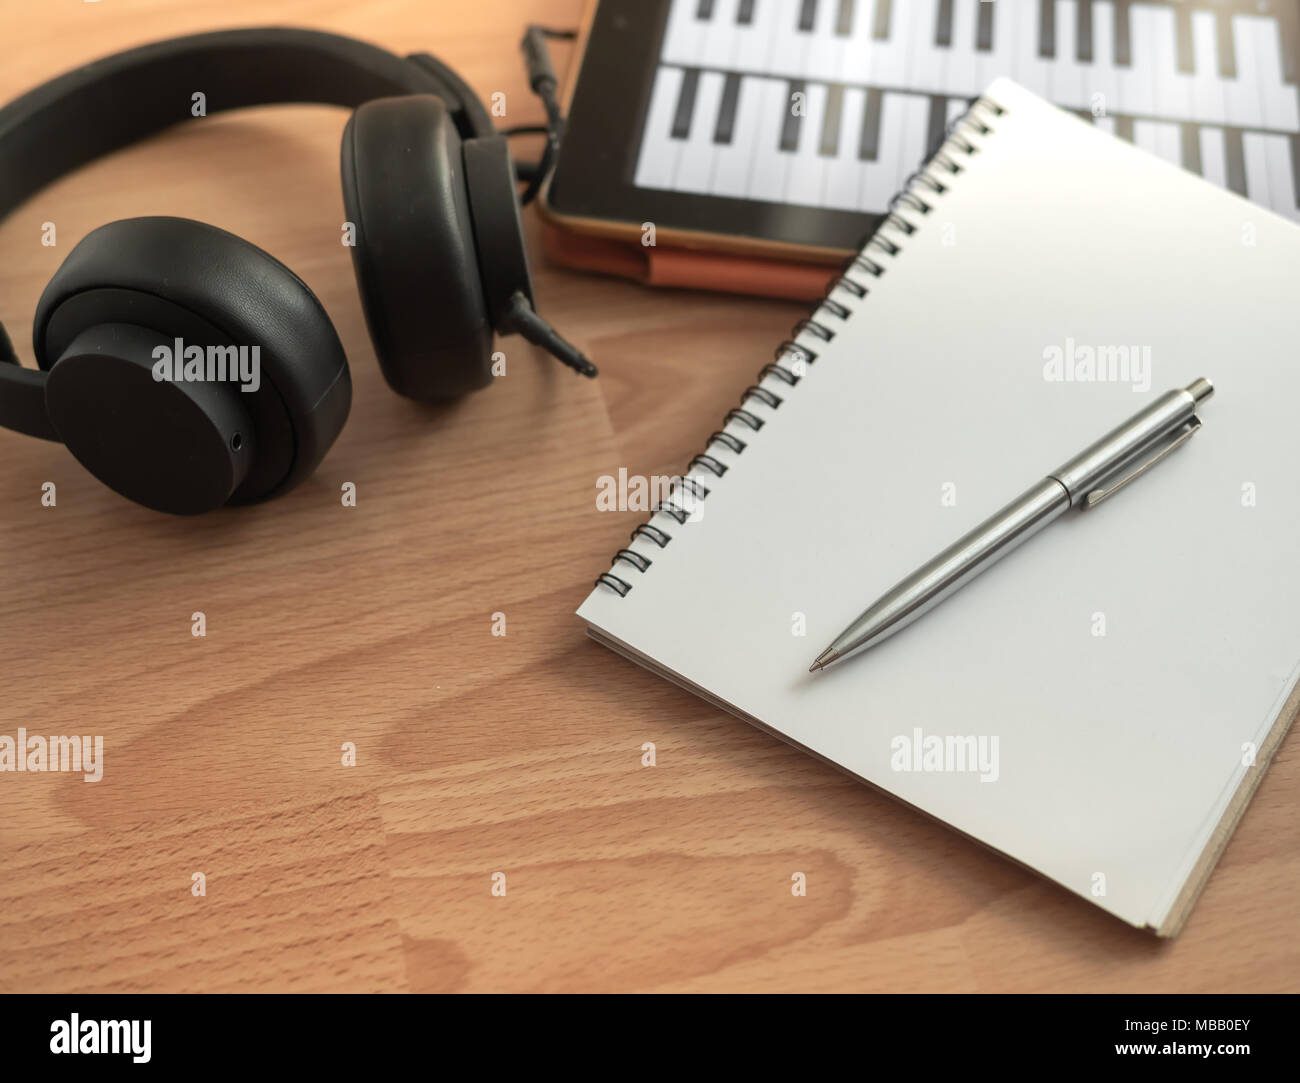 Musik Instrumente, Kopfhörer, Notebook, elektronische Tablet- und Stifteigenschaften auf hölzernen Hintergrund Stockfoto